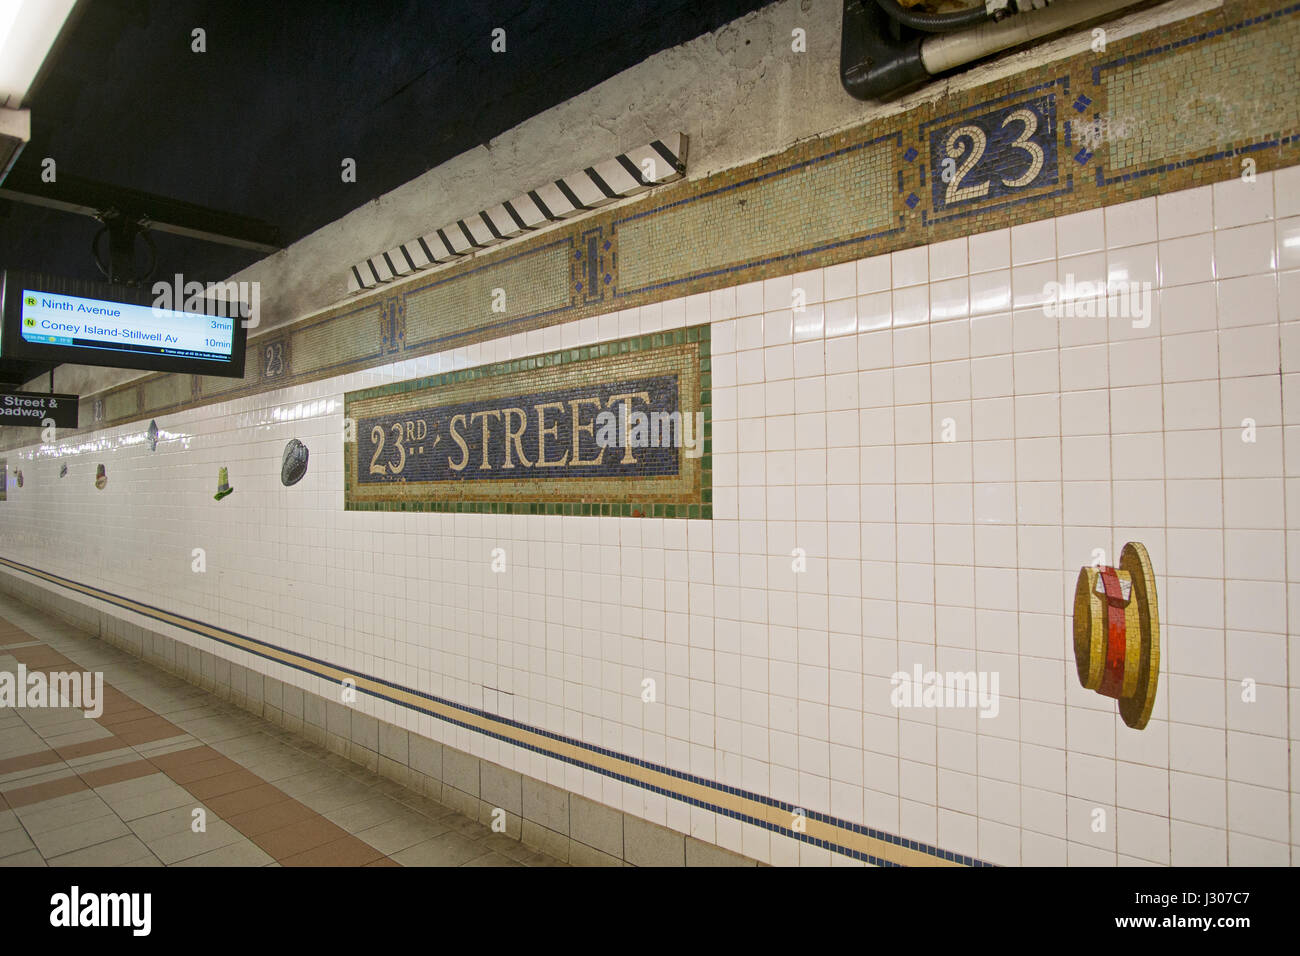 La metropolitana di arte presso la 23rd Street n, q e r il treno alla metropolitana piattaforma in Manhattan, New York City. Foto Stock